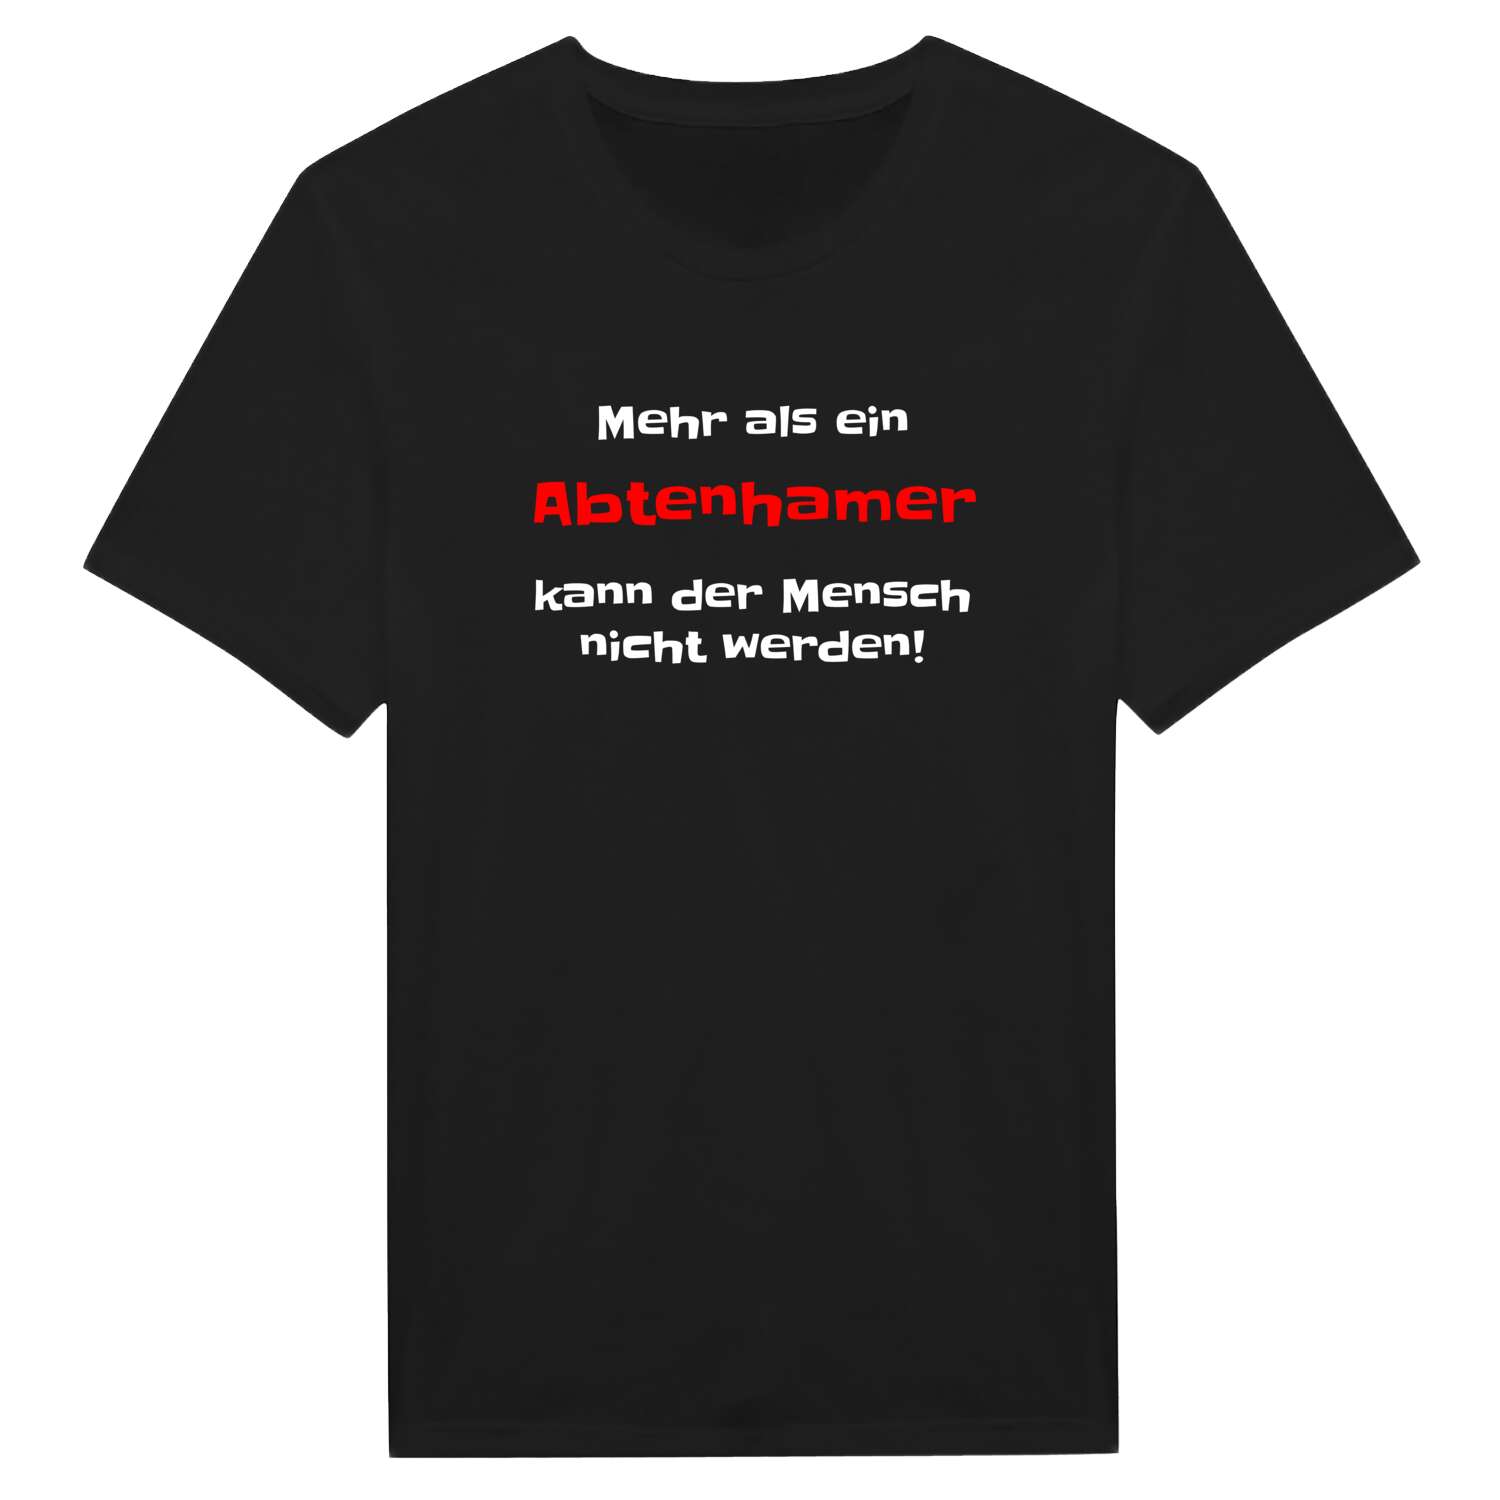 Abtenham T-Shirt »Mehr als ein«